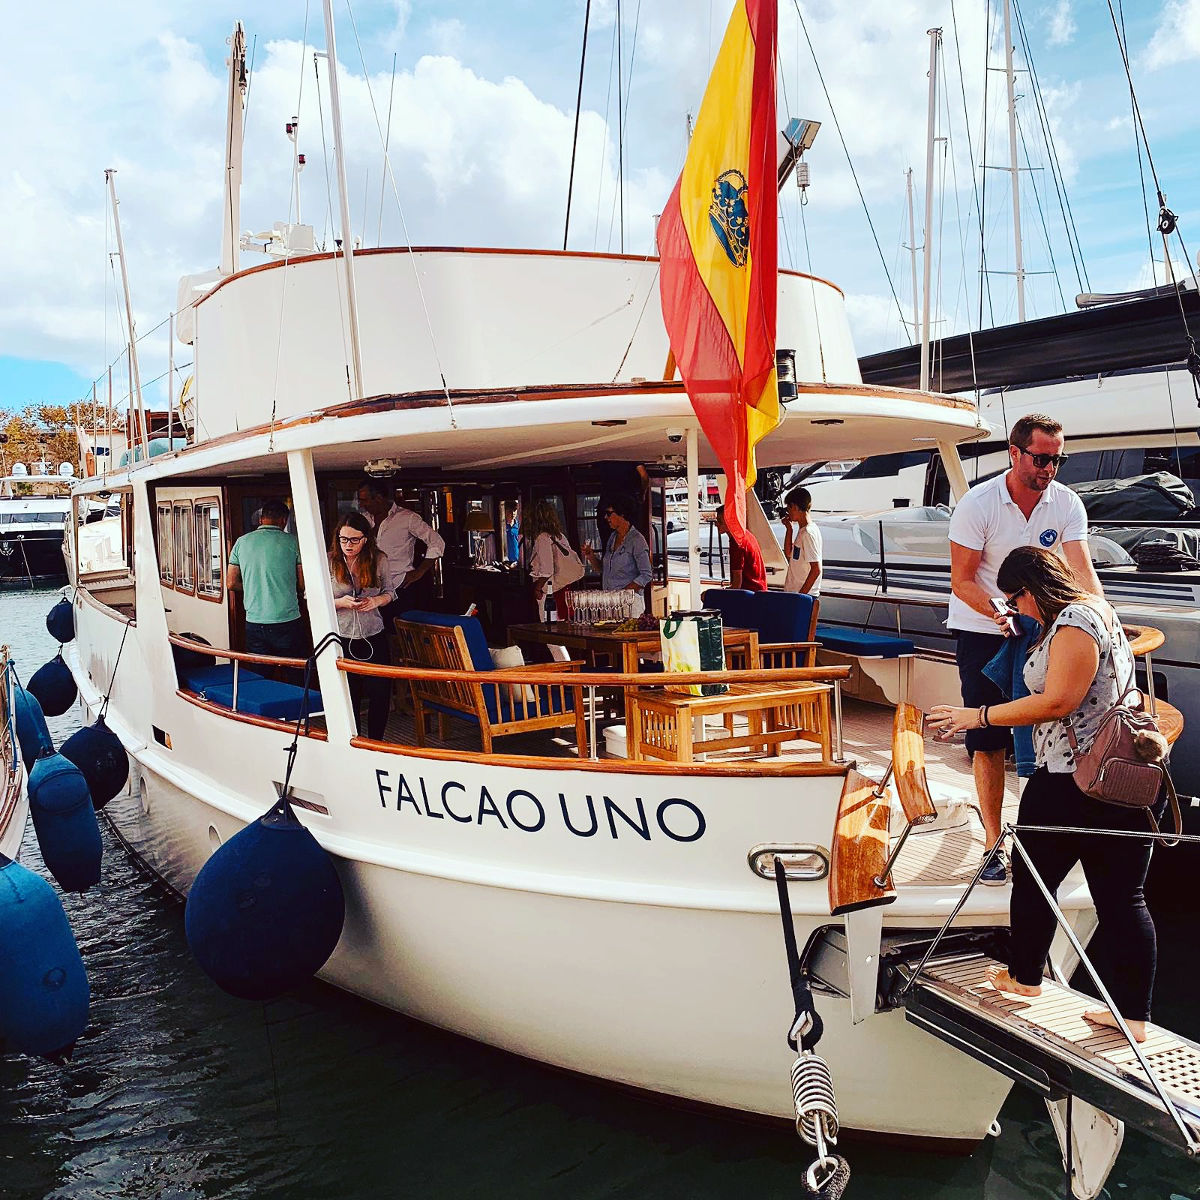 Falcao Uno, The Love Boat